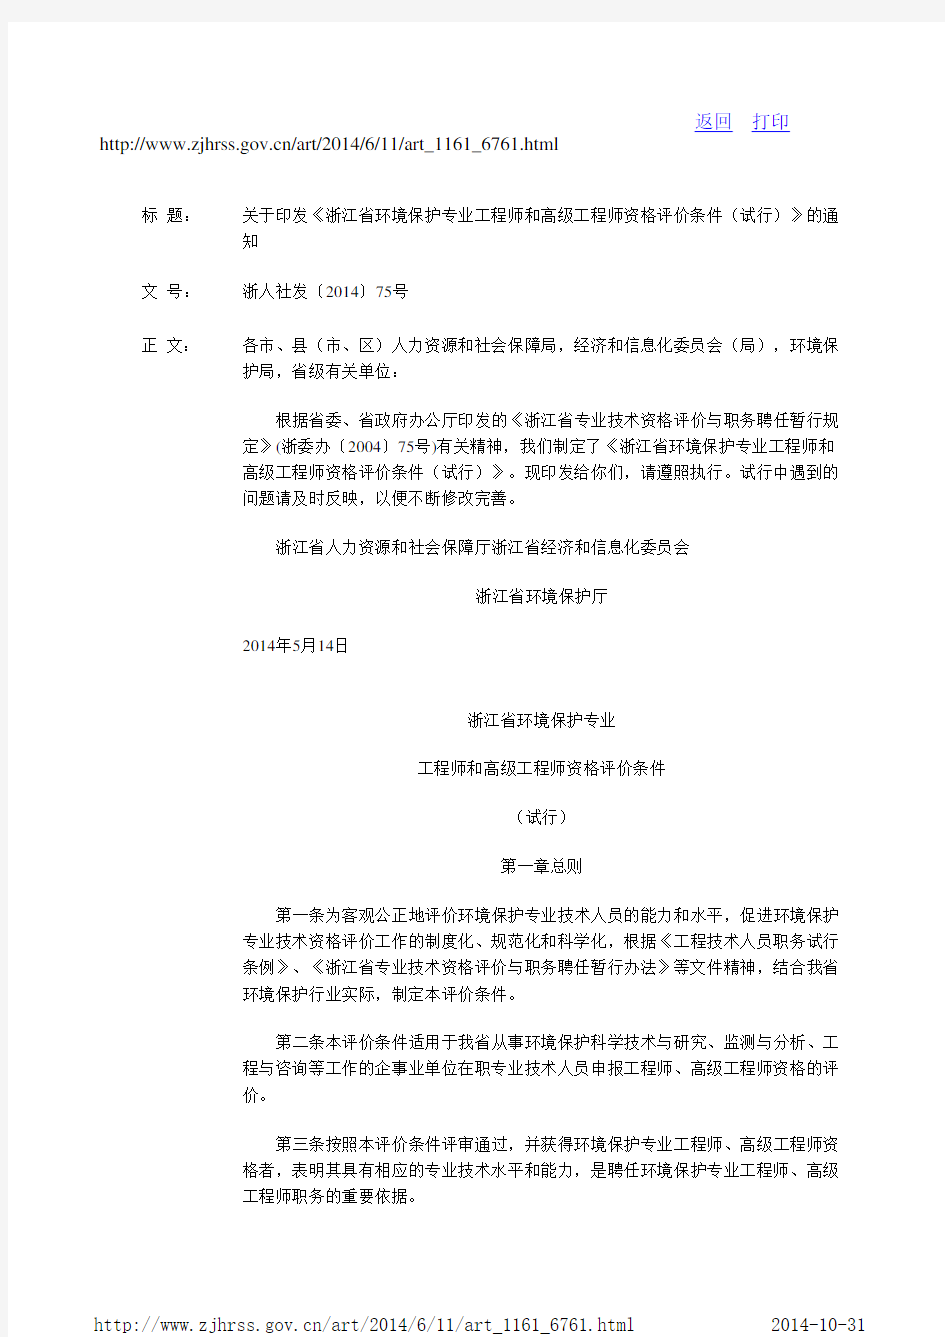 浙江省环境保护专业工程师和高级工程师资格评价条件(试行)